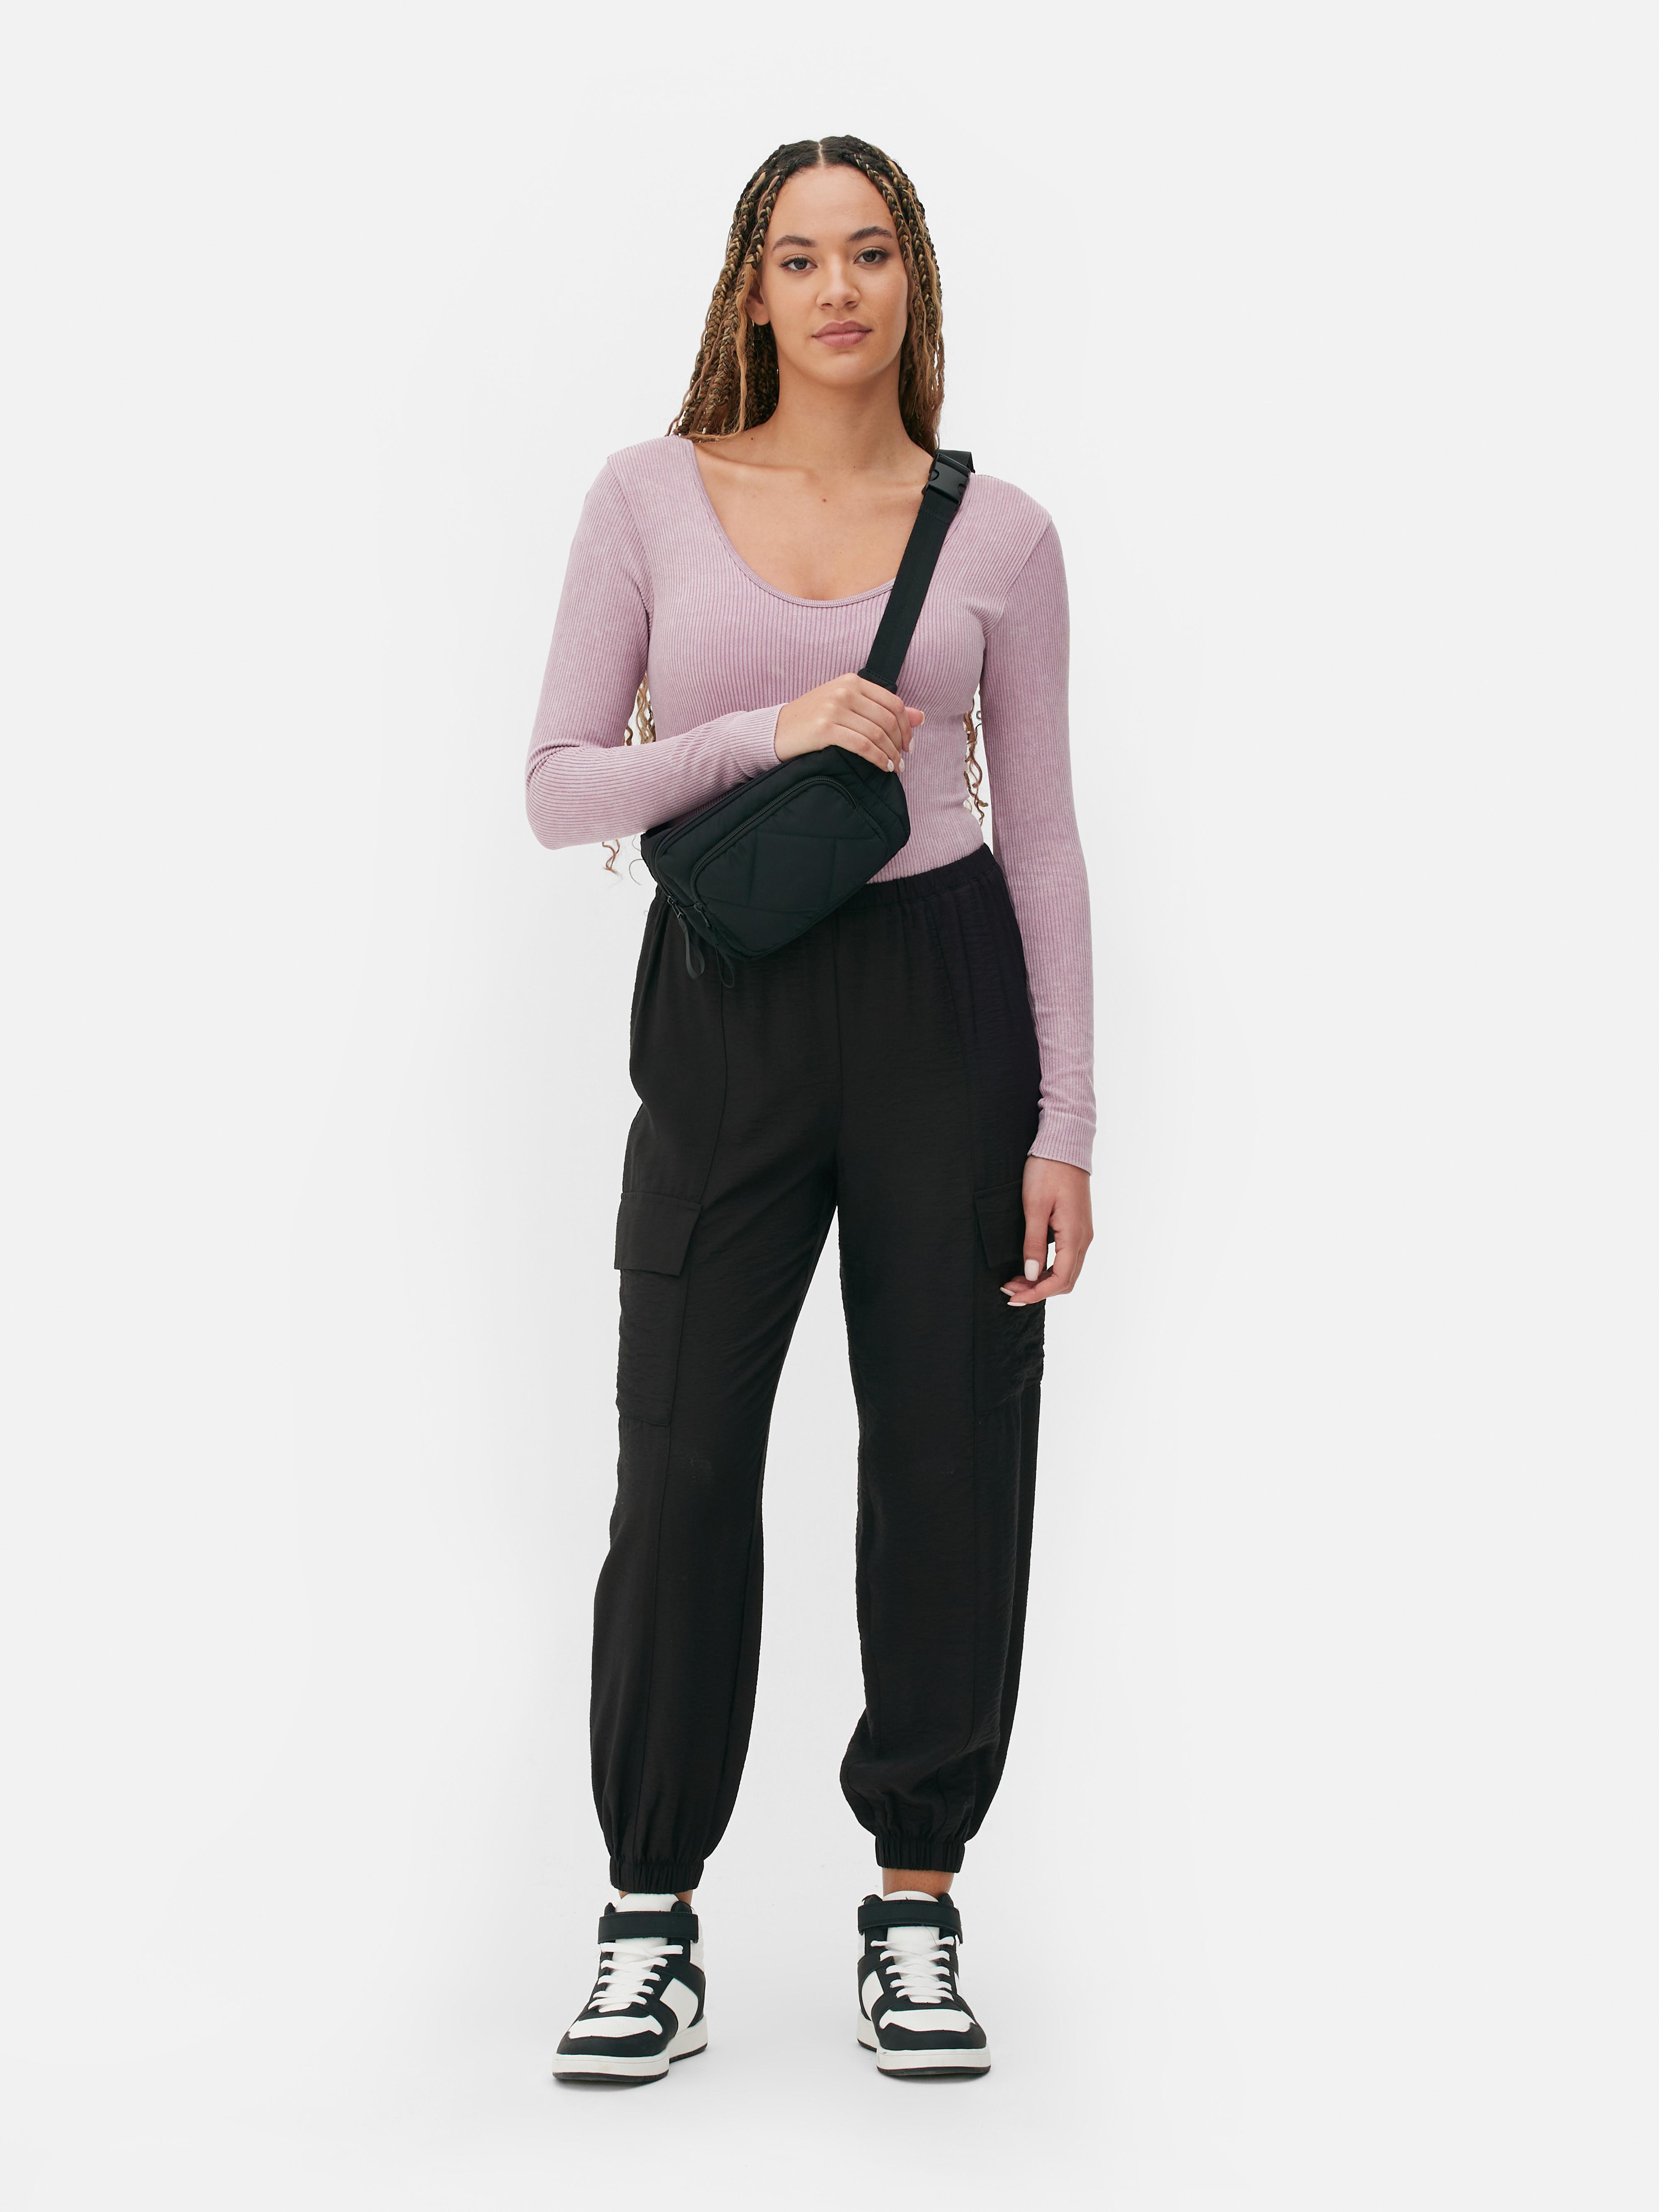 Thrift Plug - Primark black lace bodysuit Price